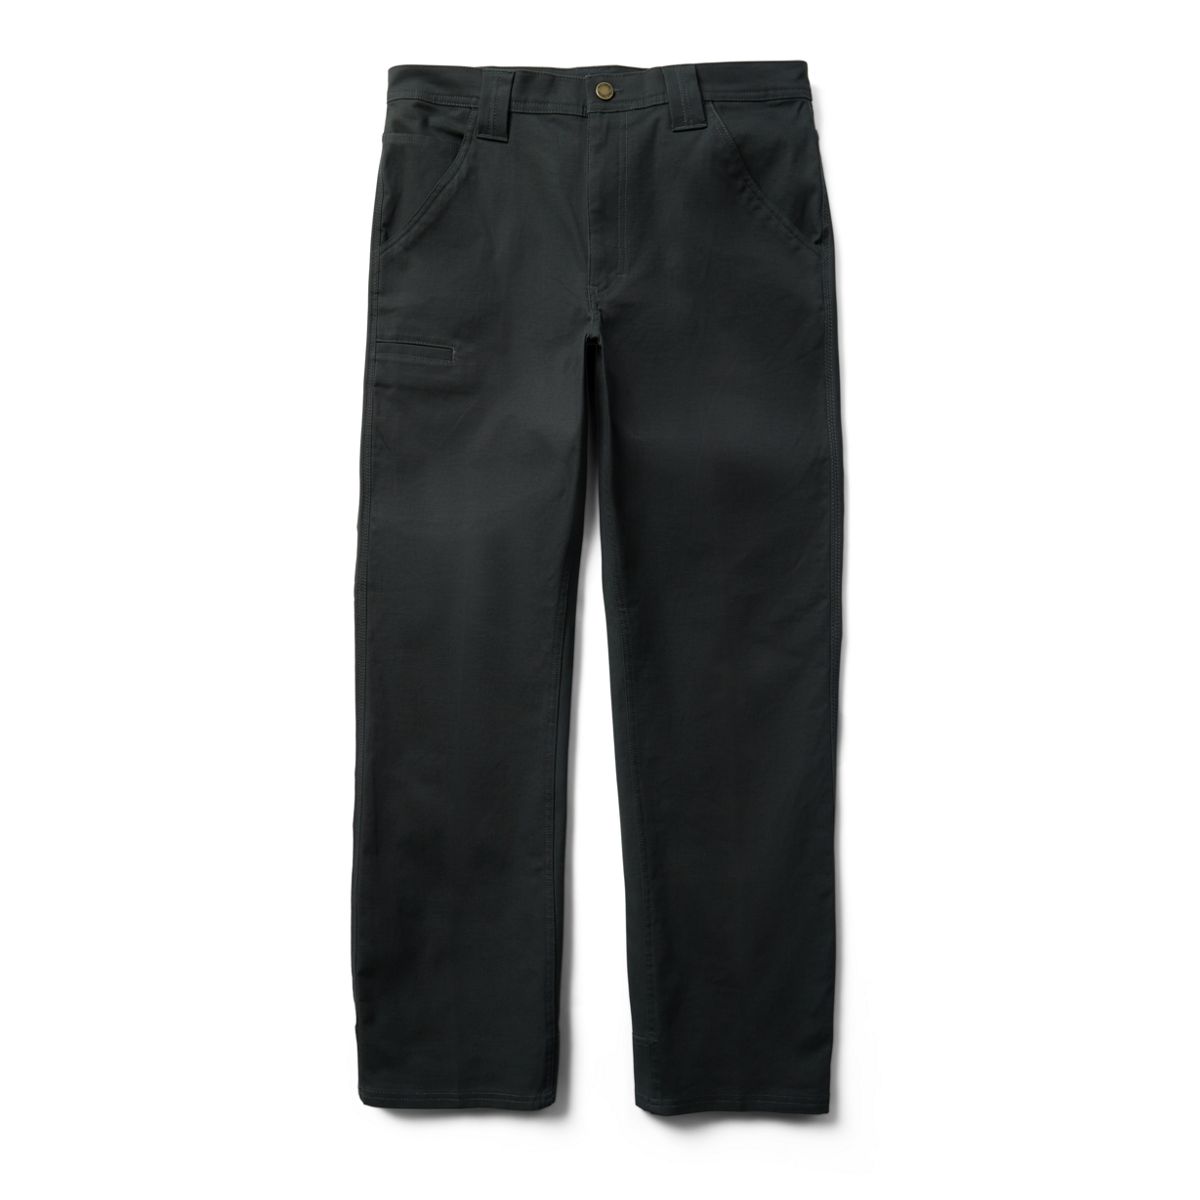 Guardian Cotton™ 5 Pocket Pant, Onyx, dynamic